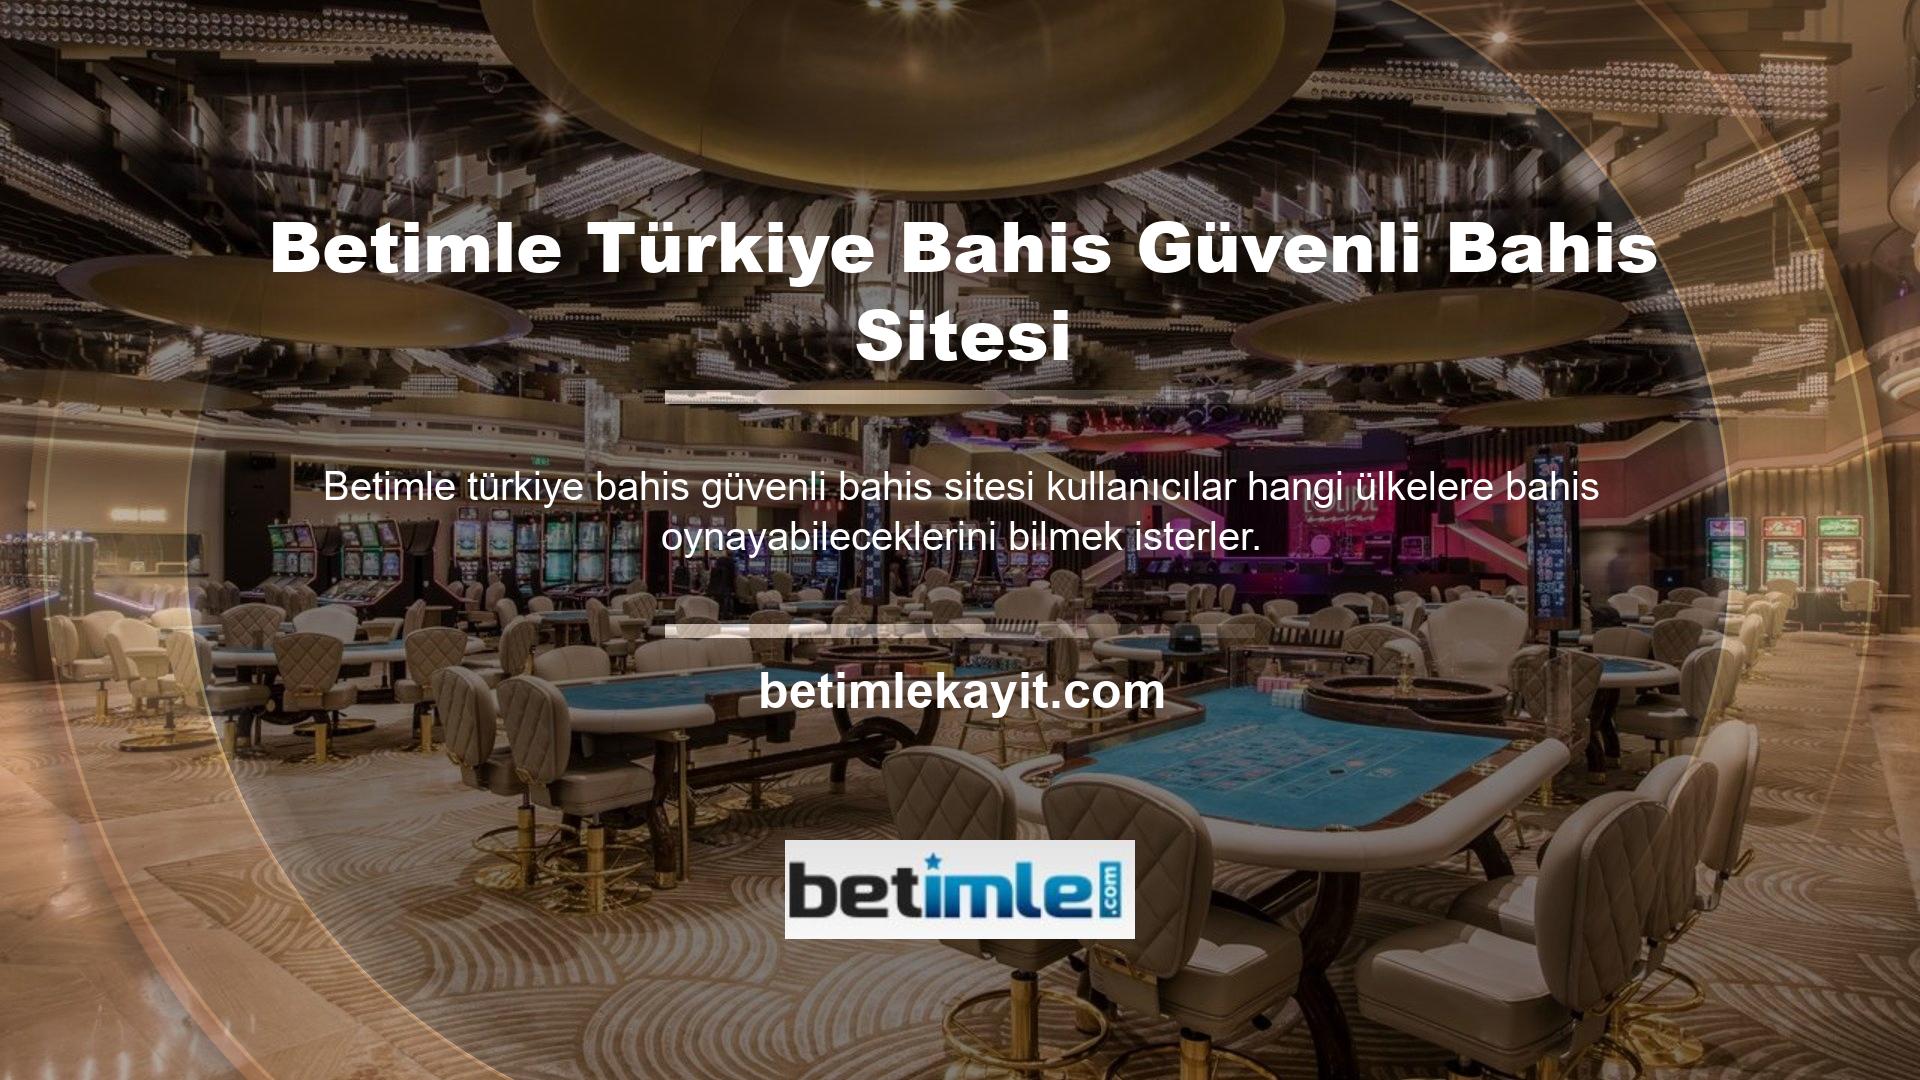 Betimle Türk güvenli casino web sitesi incelemesi, oyunun Türkiye'de oynanıp oynanmadığını belirlemeye devam ediyor